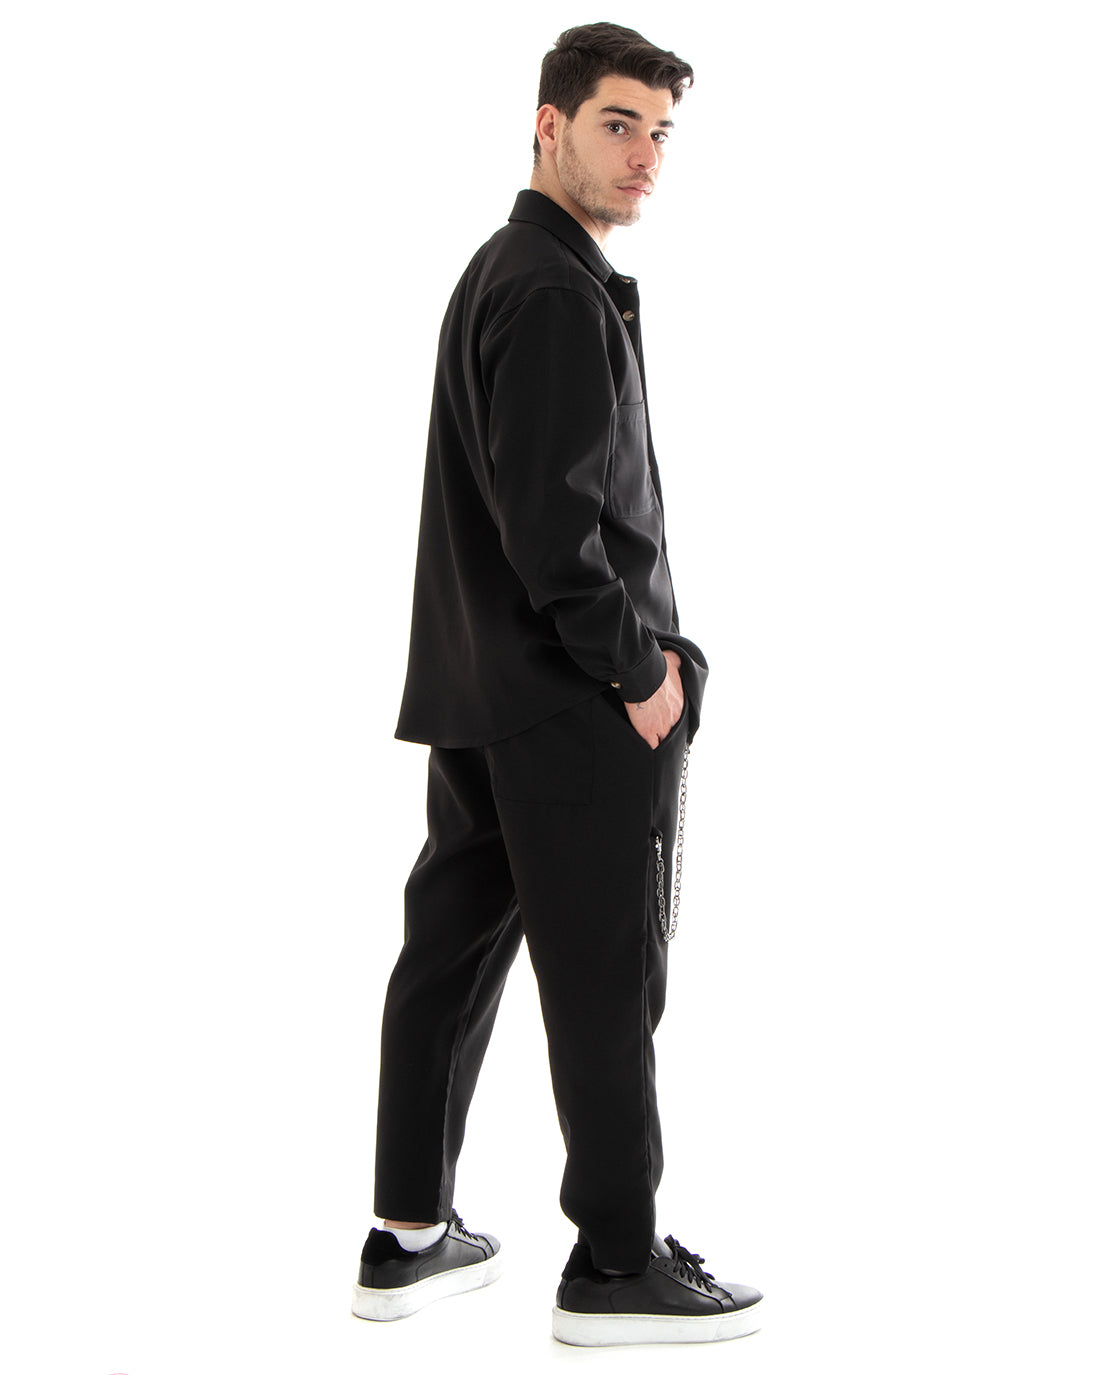 Completo Set Coordinato Uomo Viscosa Camicia Con Colletto Pantaloni Outfit Nero GIOSAL-OU2250A